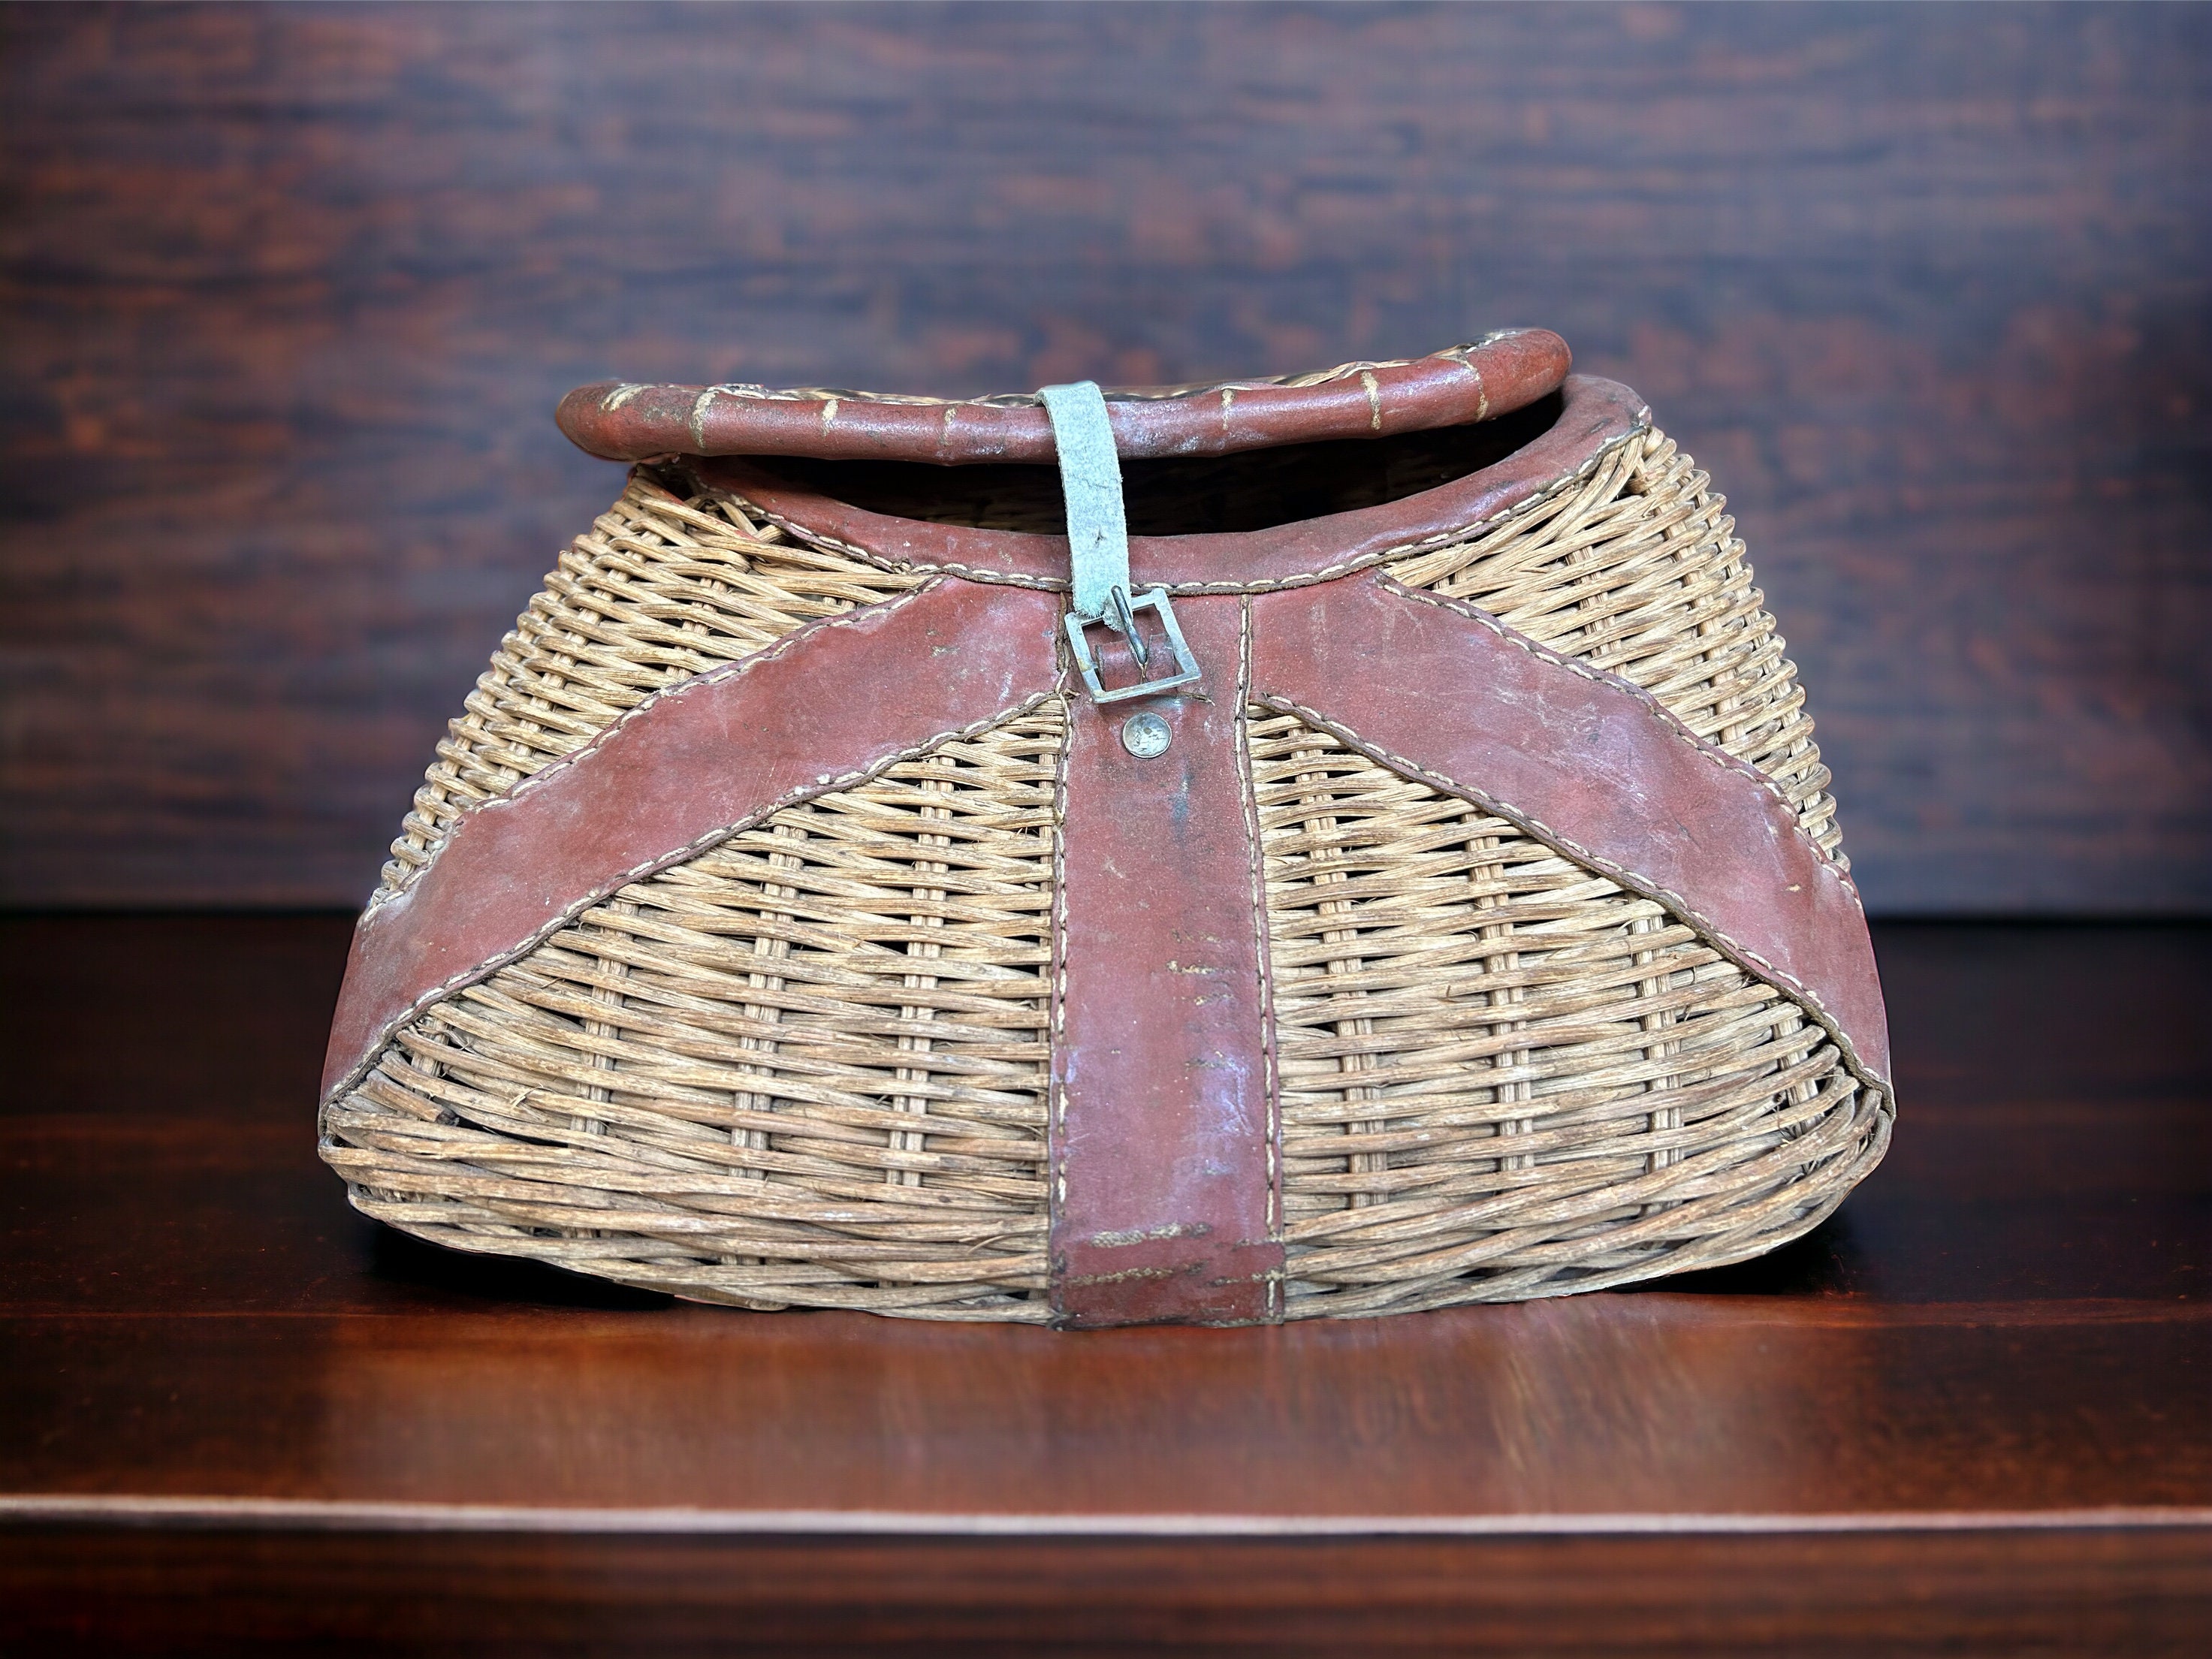 Vintage Fishing Creel, Vintage Rustic Wicker Fishing Basket